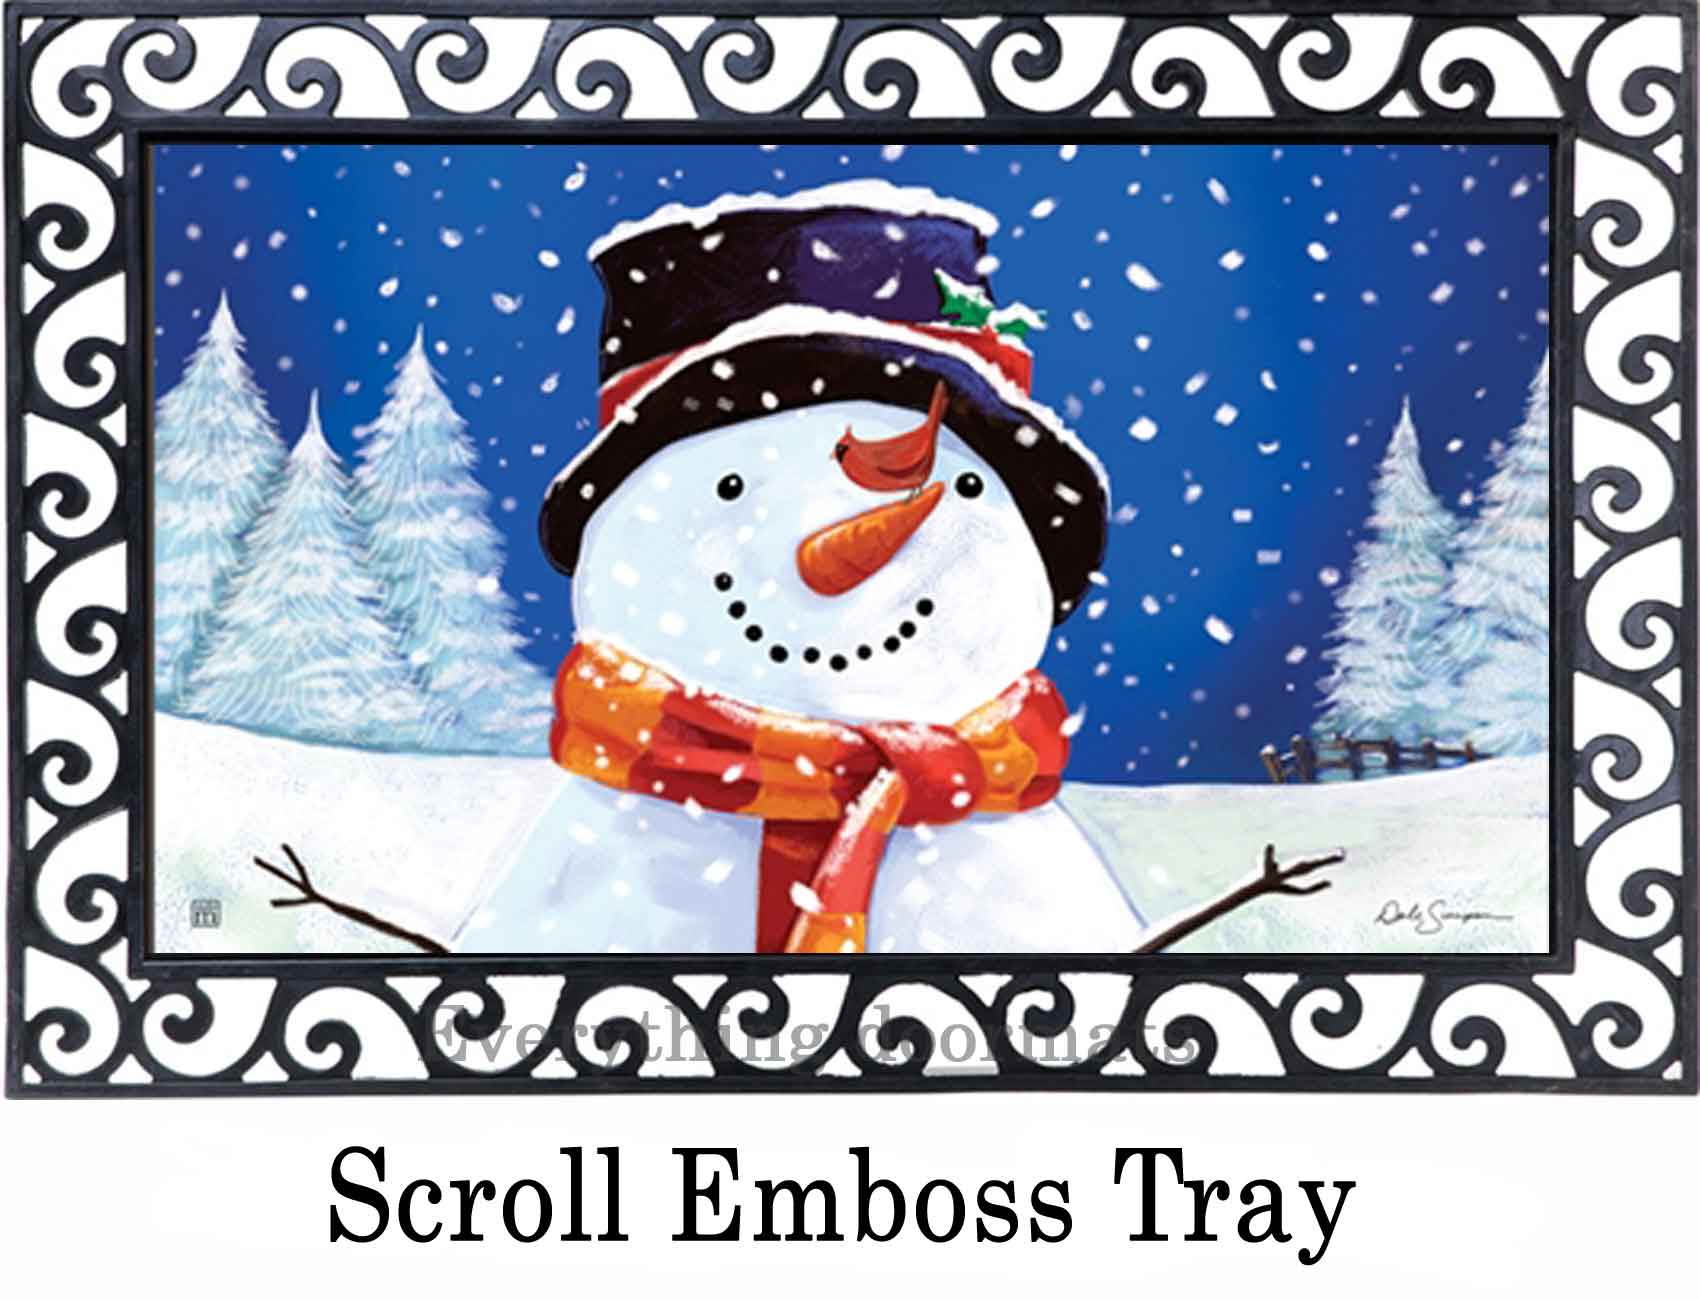 https://www.everythingdoormats.com/images/products/i-love-winter-matmates-insert-doormat-in-outdoor-scroll-emboss-doormat-tray.jpg